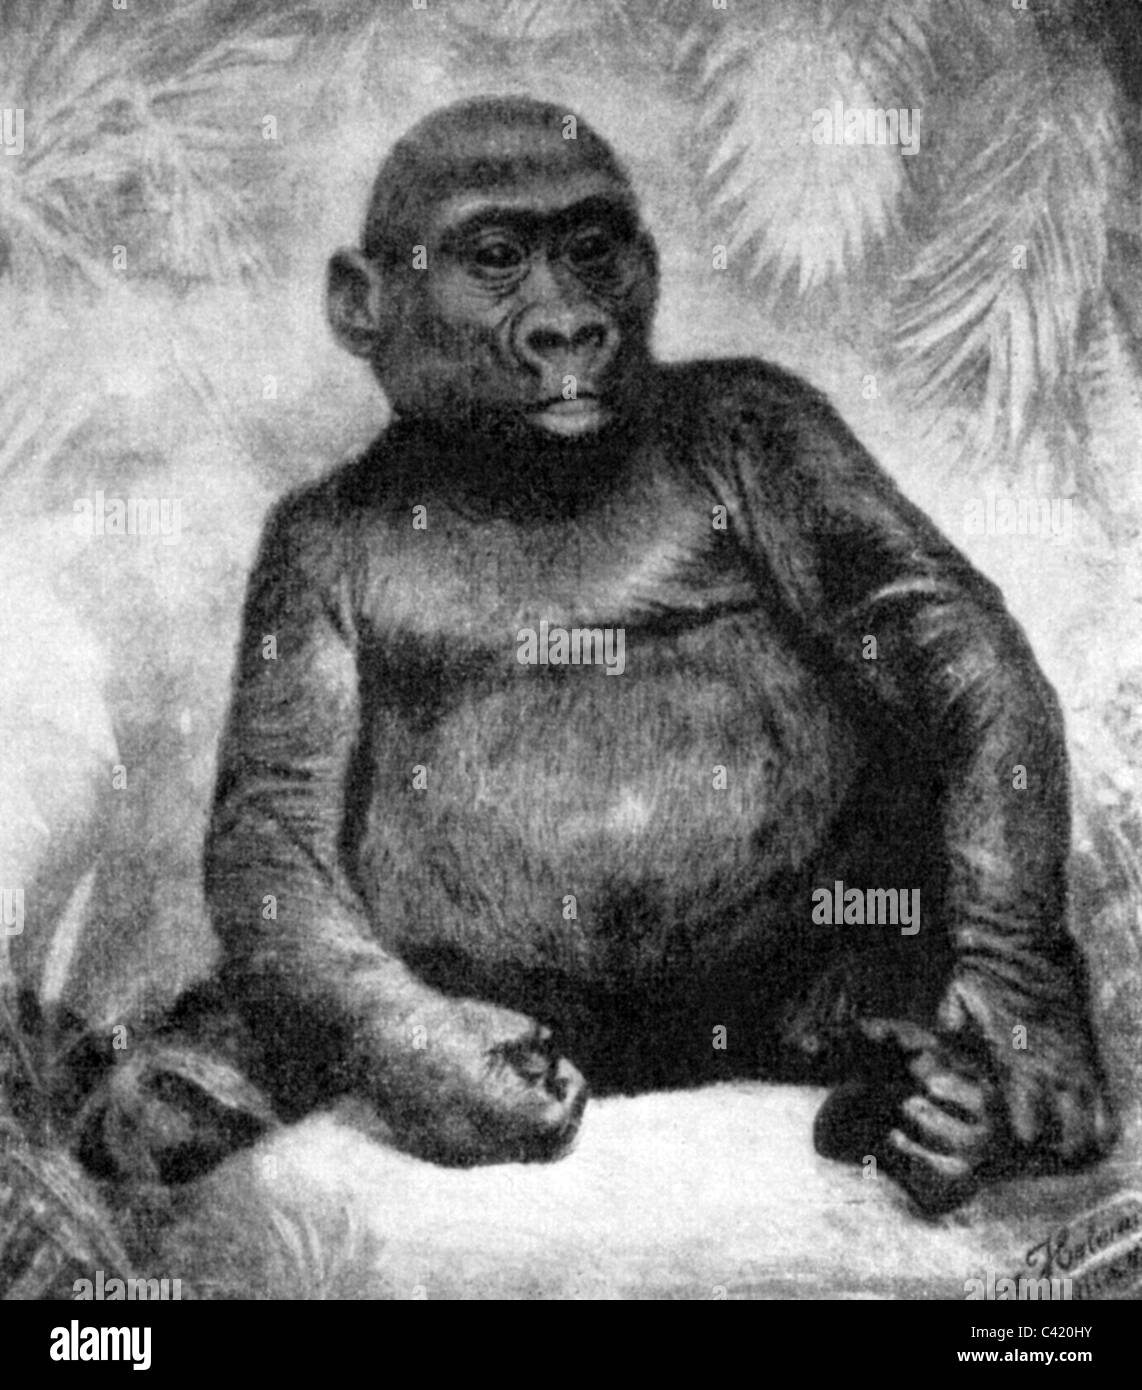 zoologie, mammifères, singes, hominidae, gorilla Mpungu, exposé par Alfred Brehm dans l'Aquarium de Berlin 1870, droits additionnels-Clearences-non disponible Banque D'Images